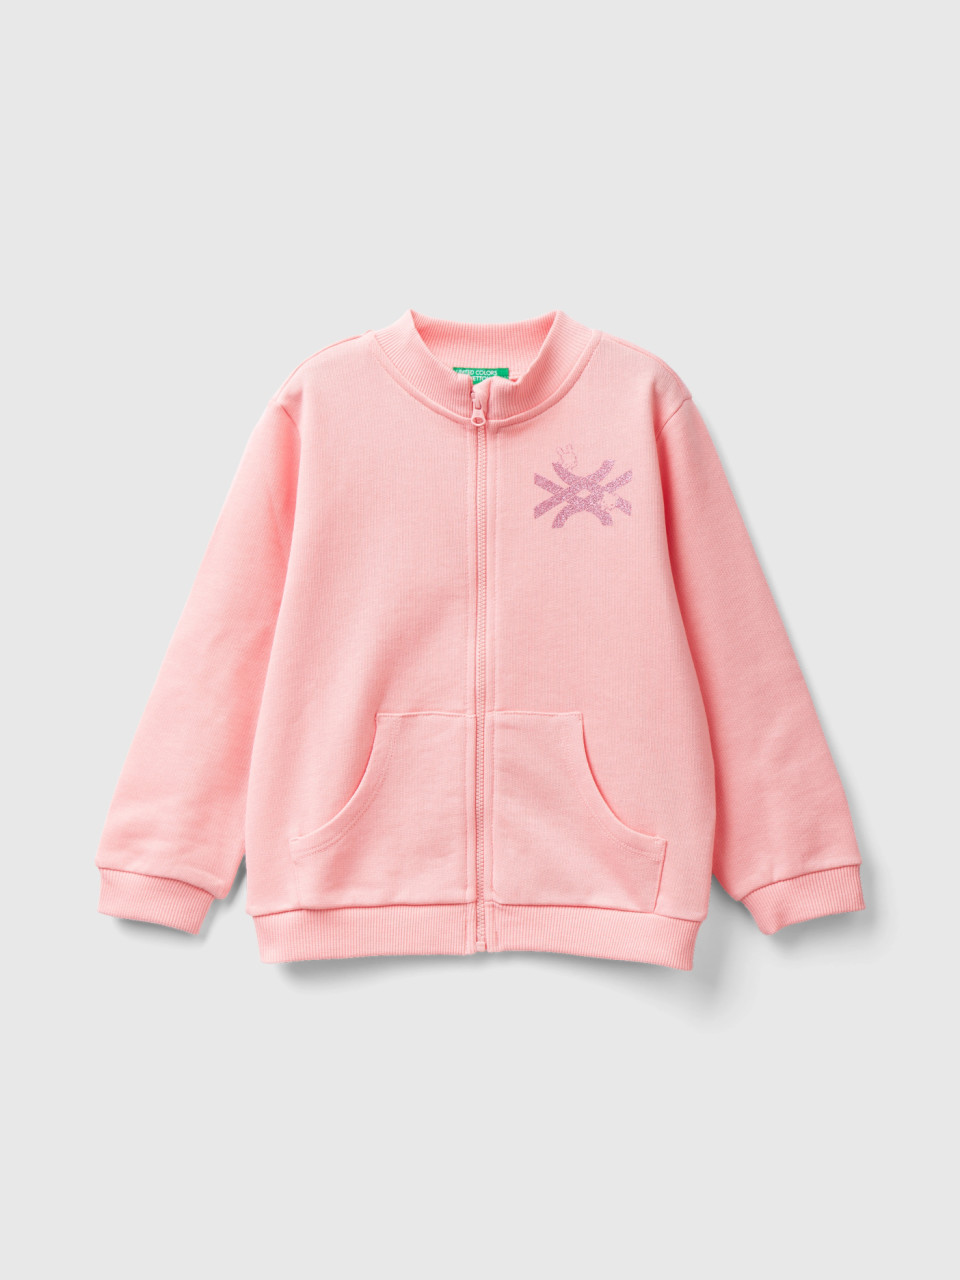 Benetton, Sweatshirt With Zip In Organic Cotton, Pink, Kids